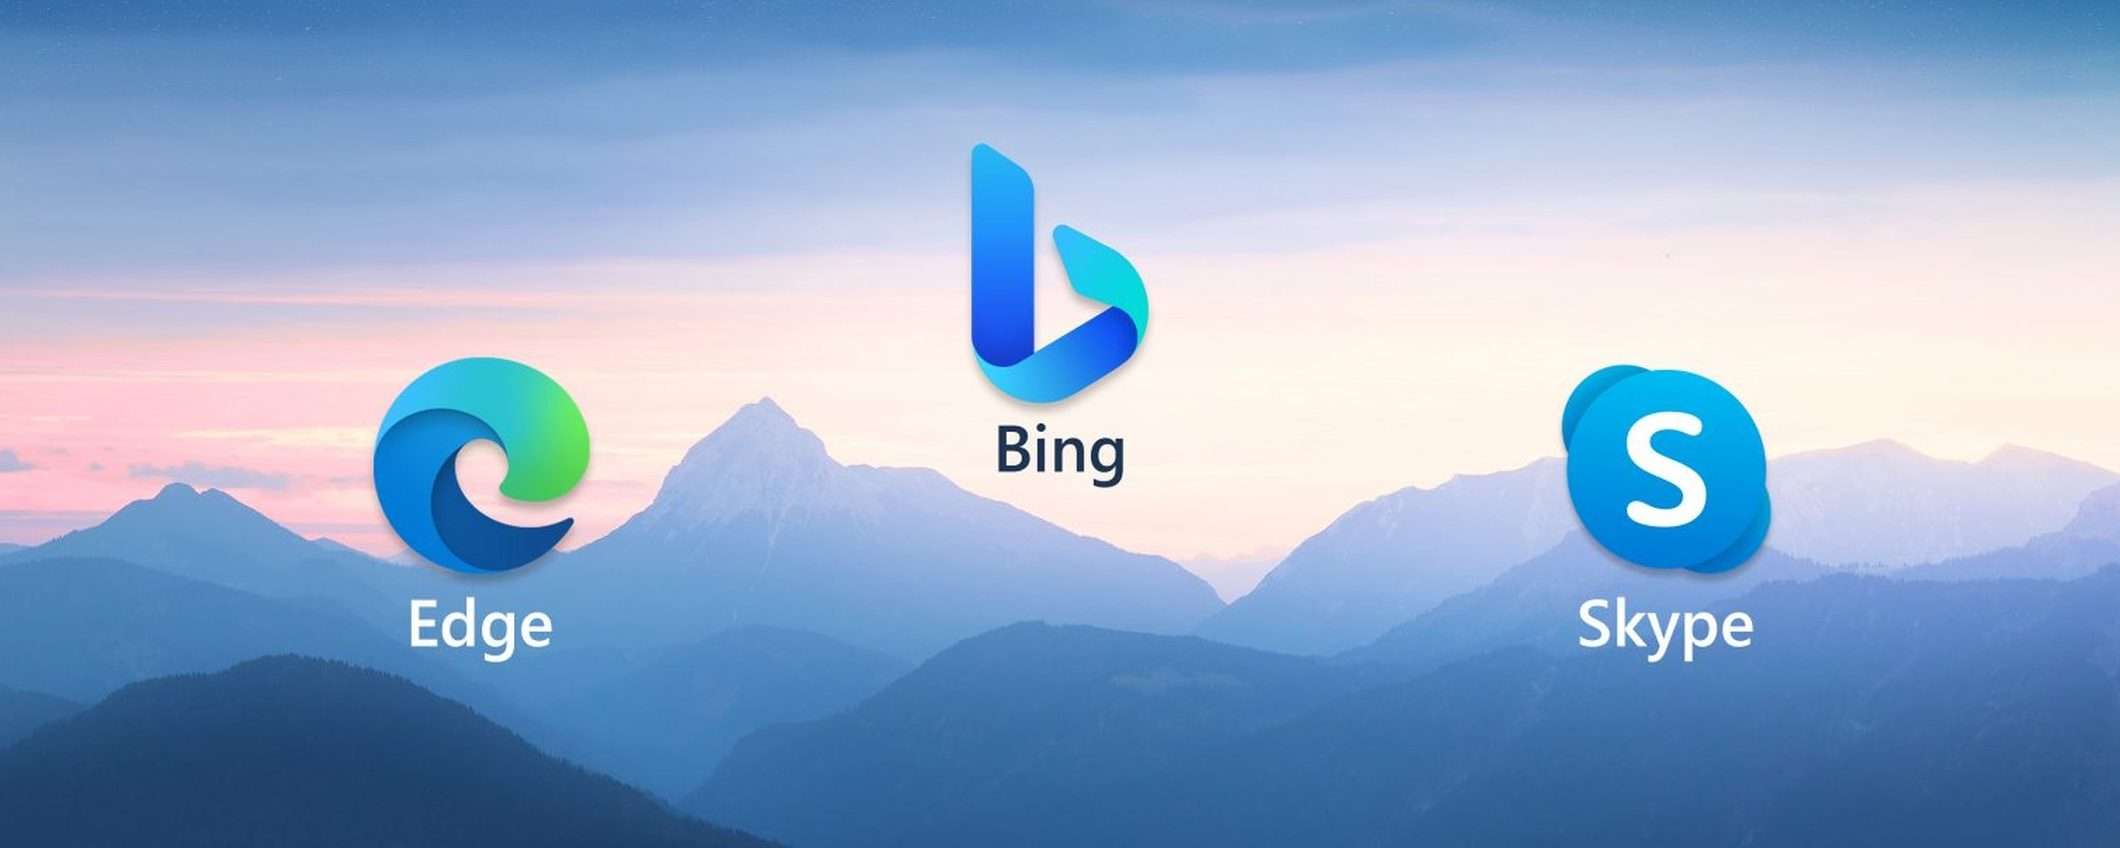 Microsoft porta il nuovo Bing su mobile e in Skype